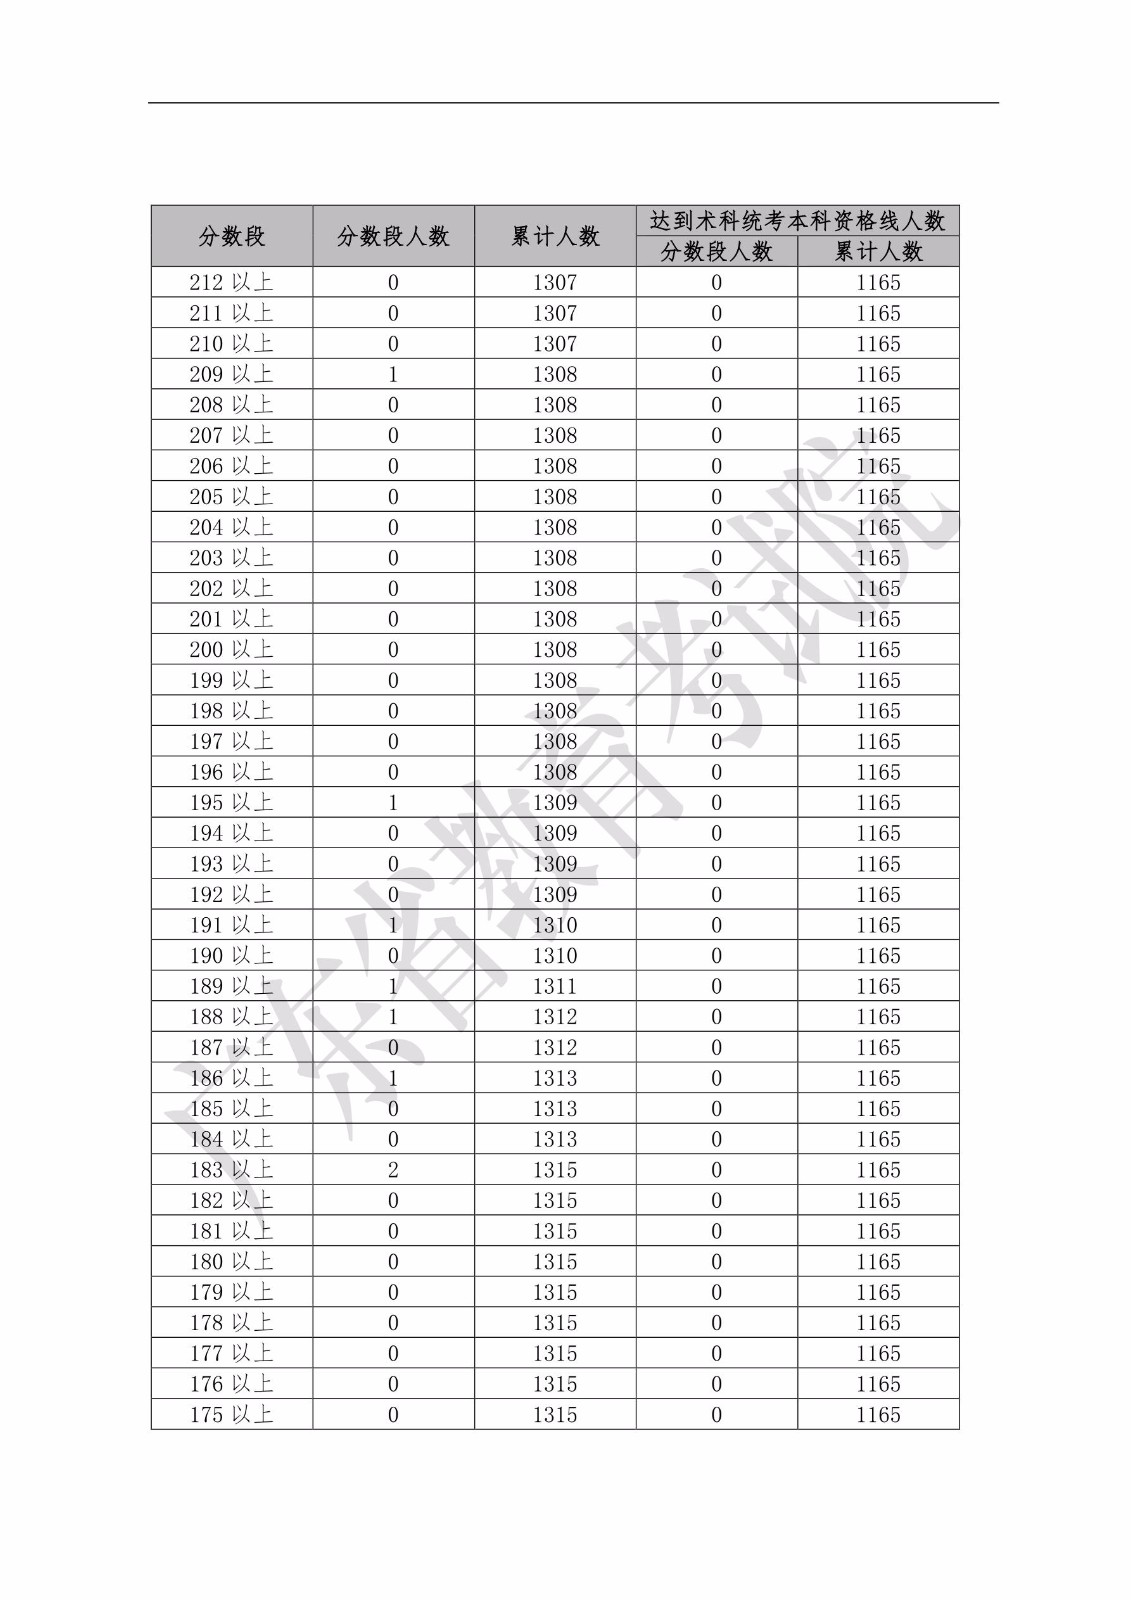 2019年广东省普通高考舞蹈类分数段统计表